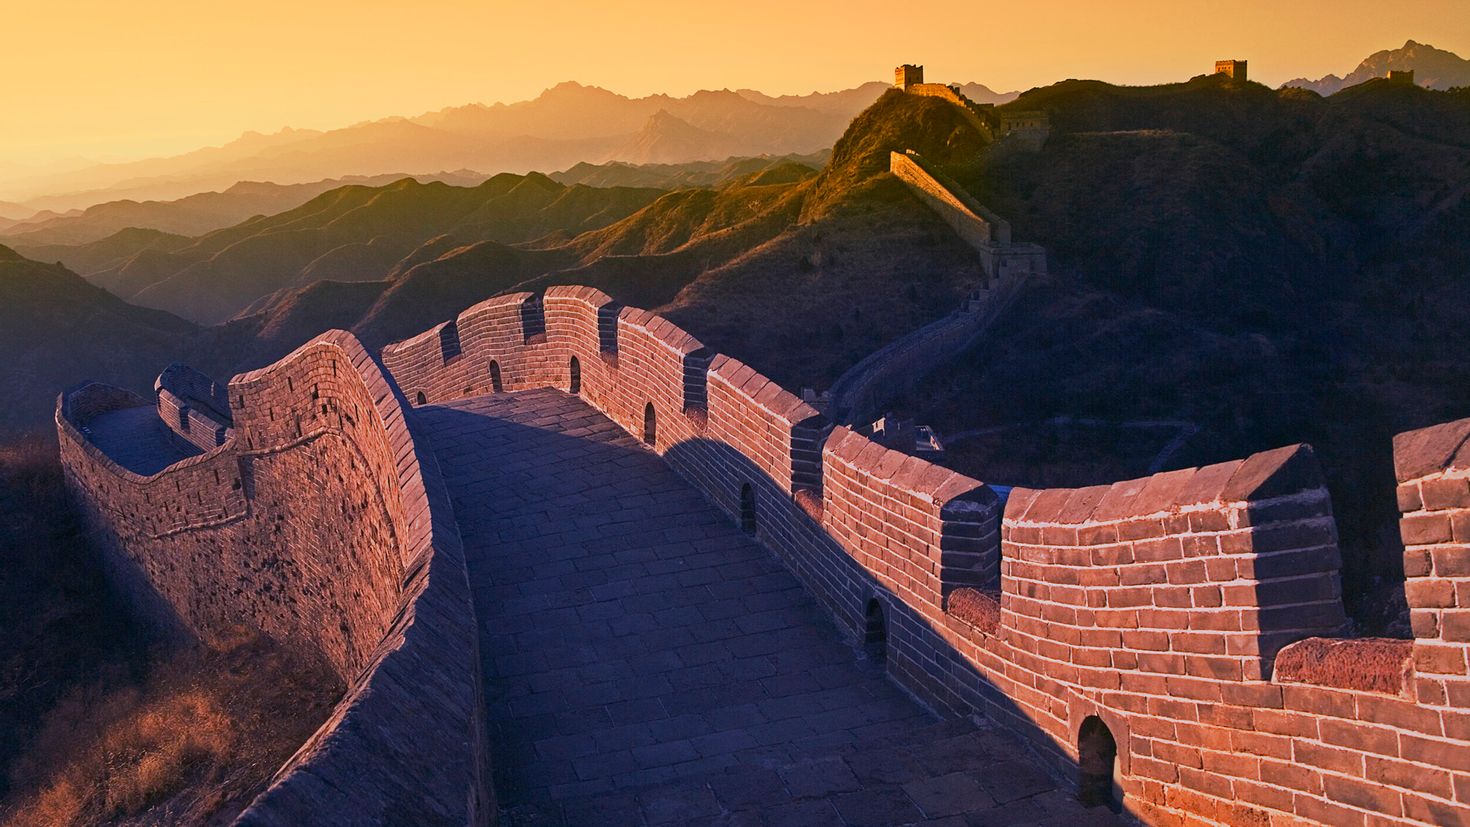 Китайская стена. Великая китайская стена Цинь Шихуанди. Семь чудес света китайская стена. Великая китайская стена панорама. Китайская стена Фоменко.